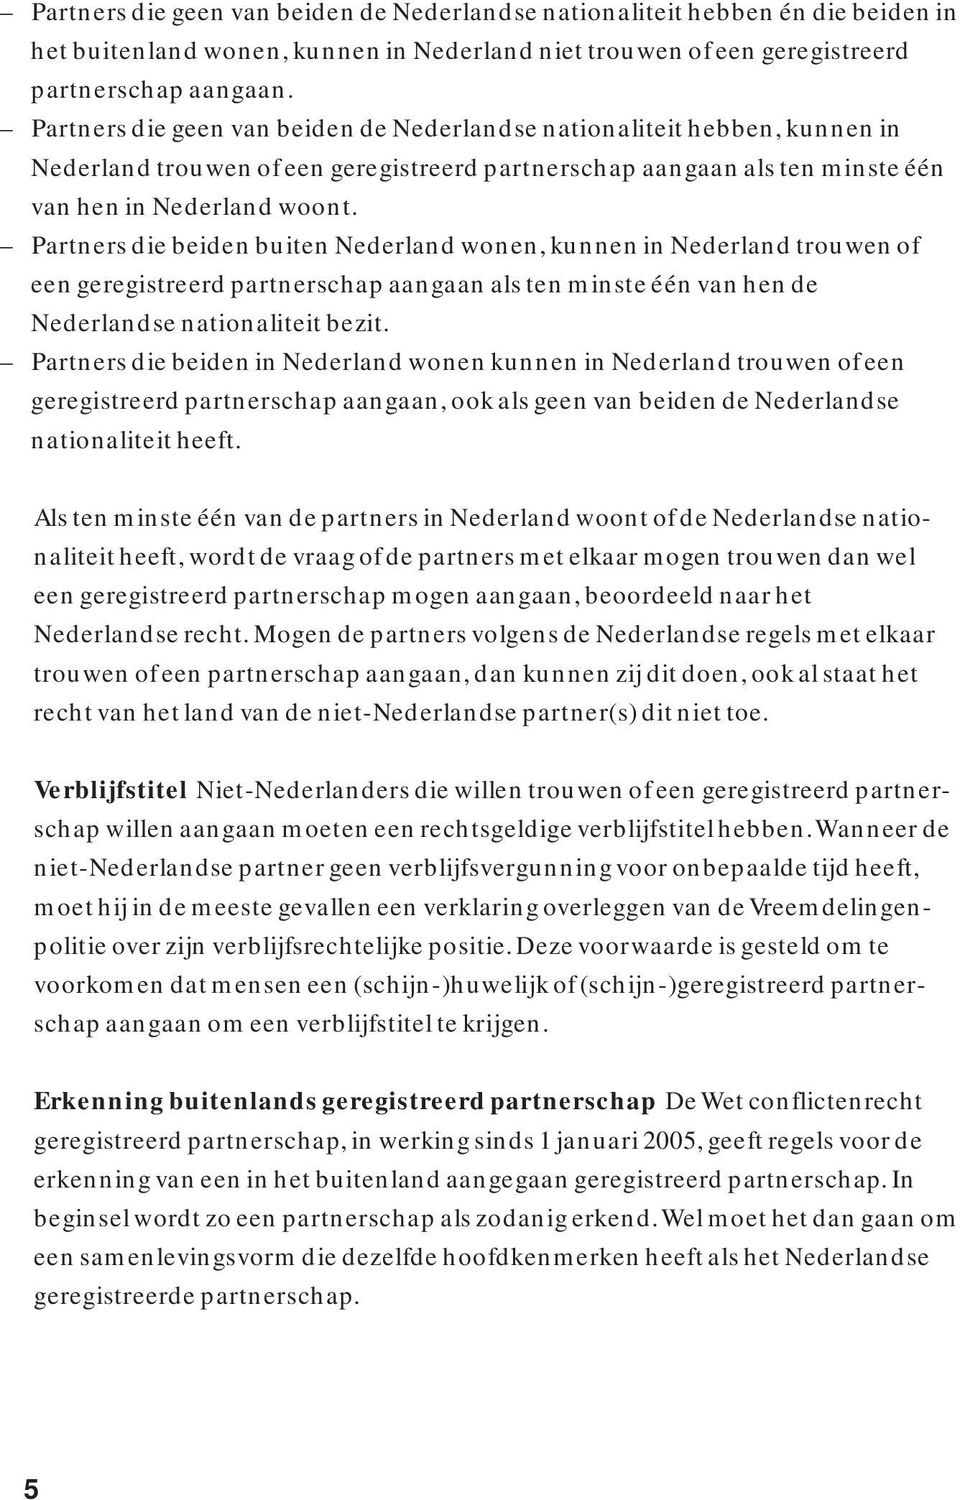 Partners die beiden buiten Nederland wonen, kunnen in Nederland trouwen of een geregistreerd partnerschap aangaan als ten minste één van hen de Nederlandse nationaliteit bezit.